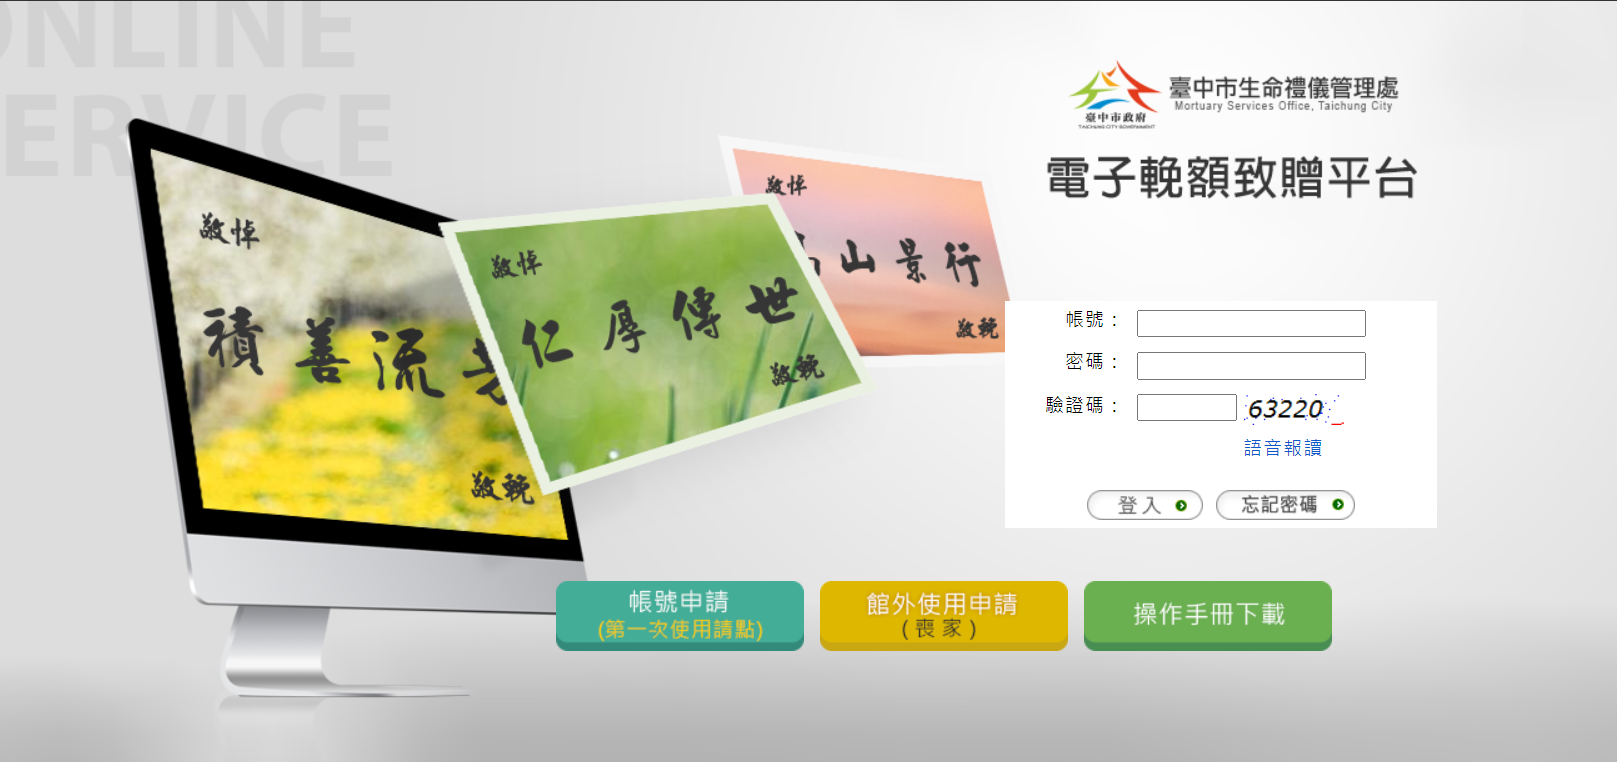 可至臺中市生命禮儀管理處的電子輓額平台線上申請電子輓